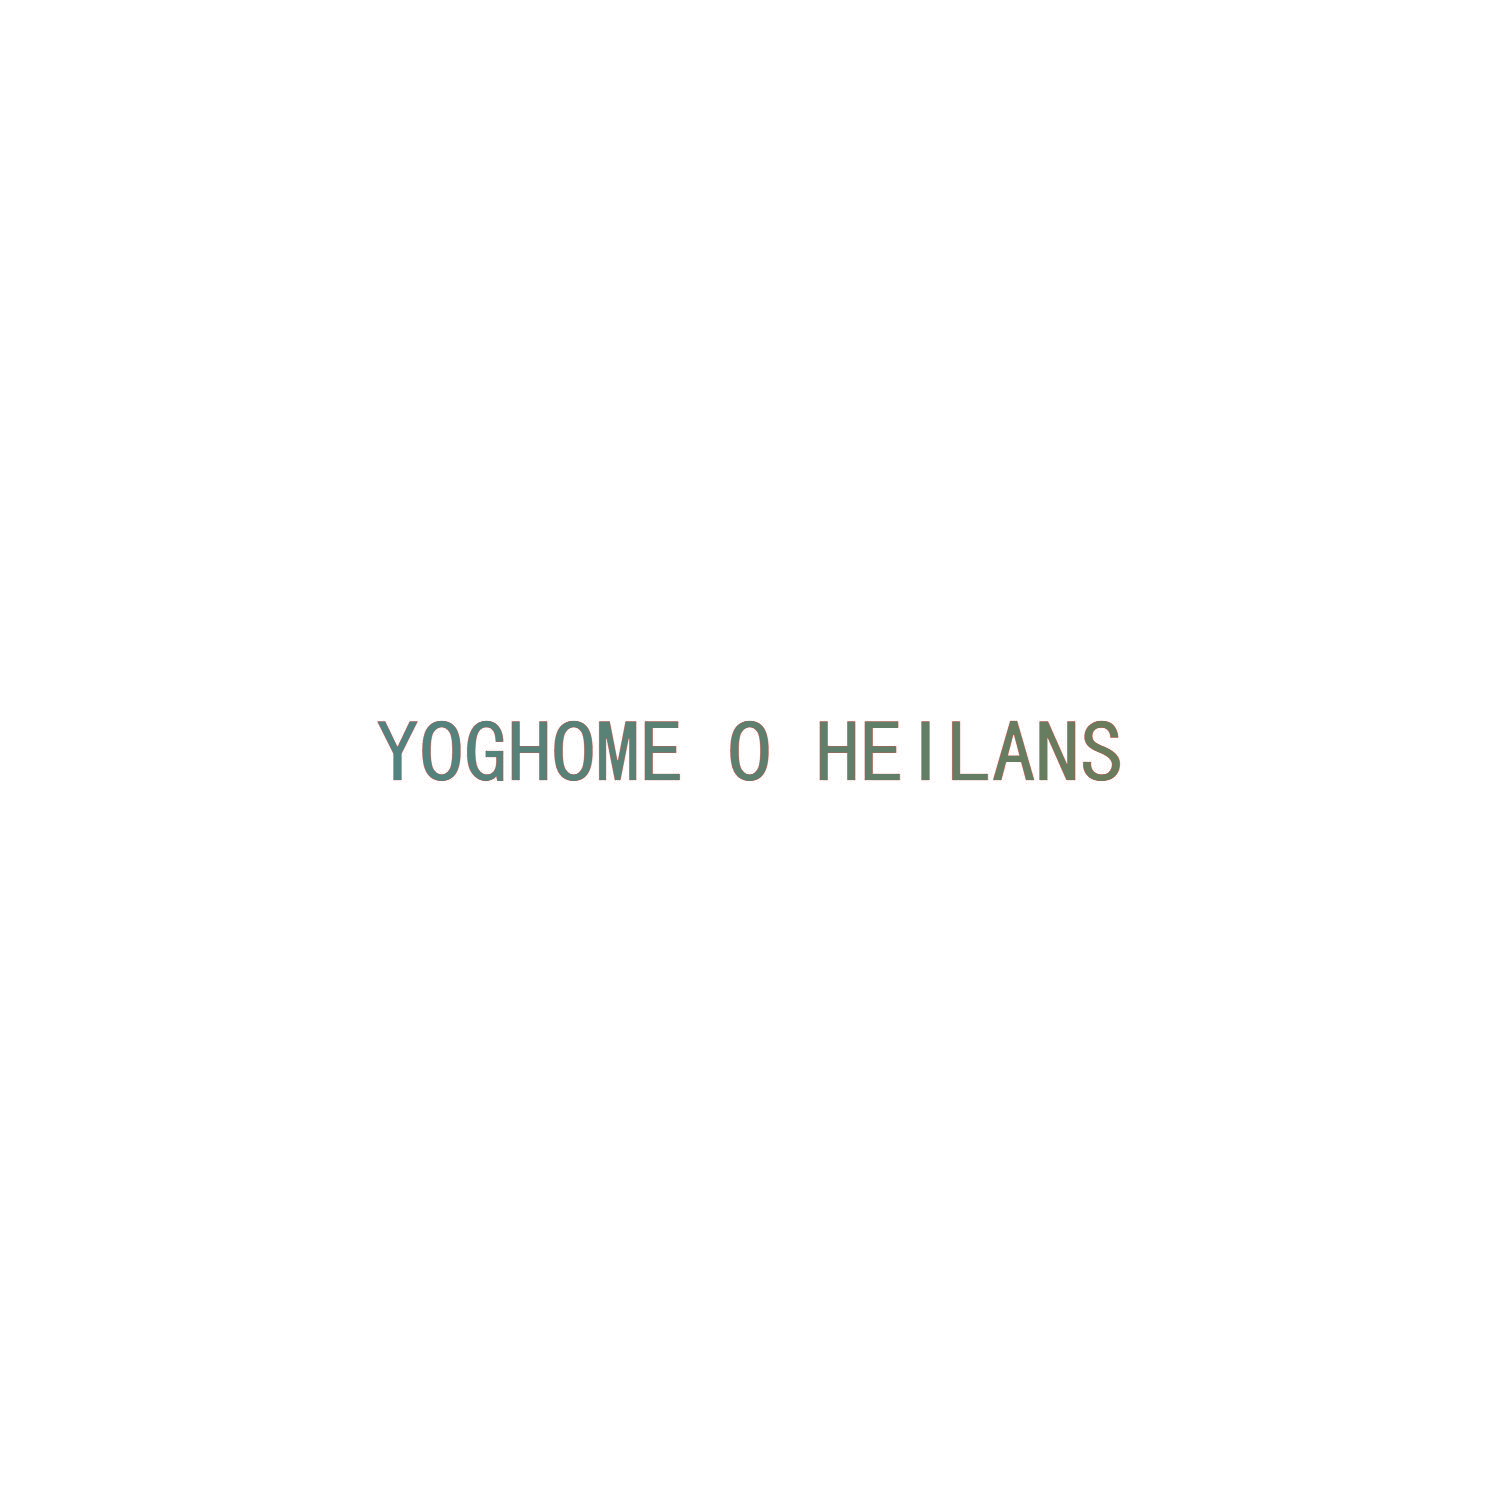 YOGHOME O HEILANS